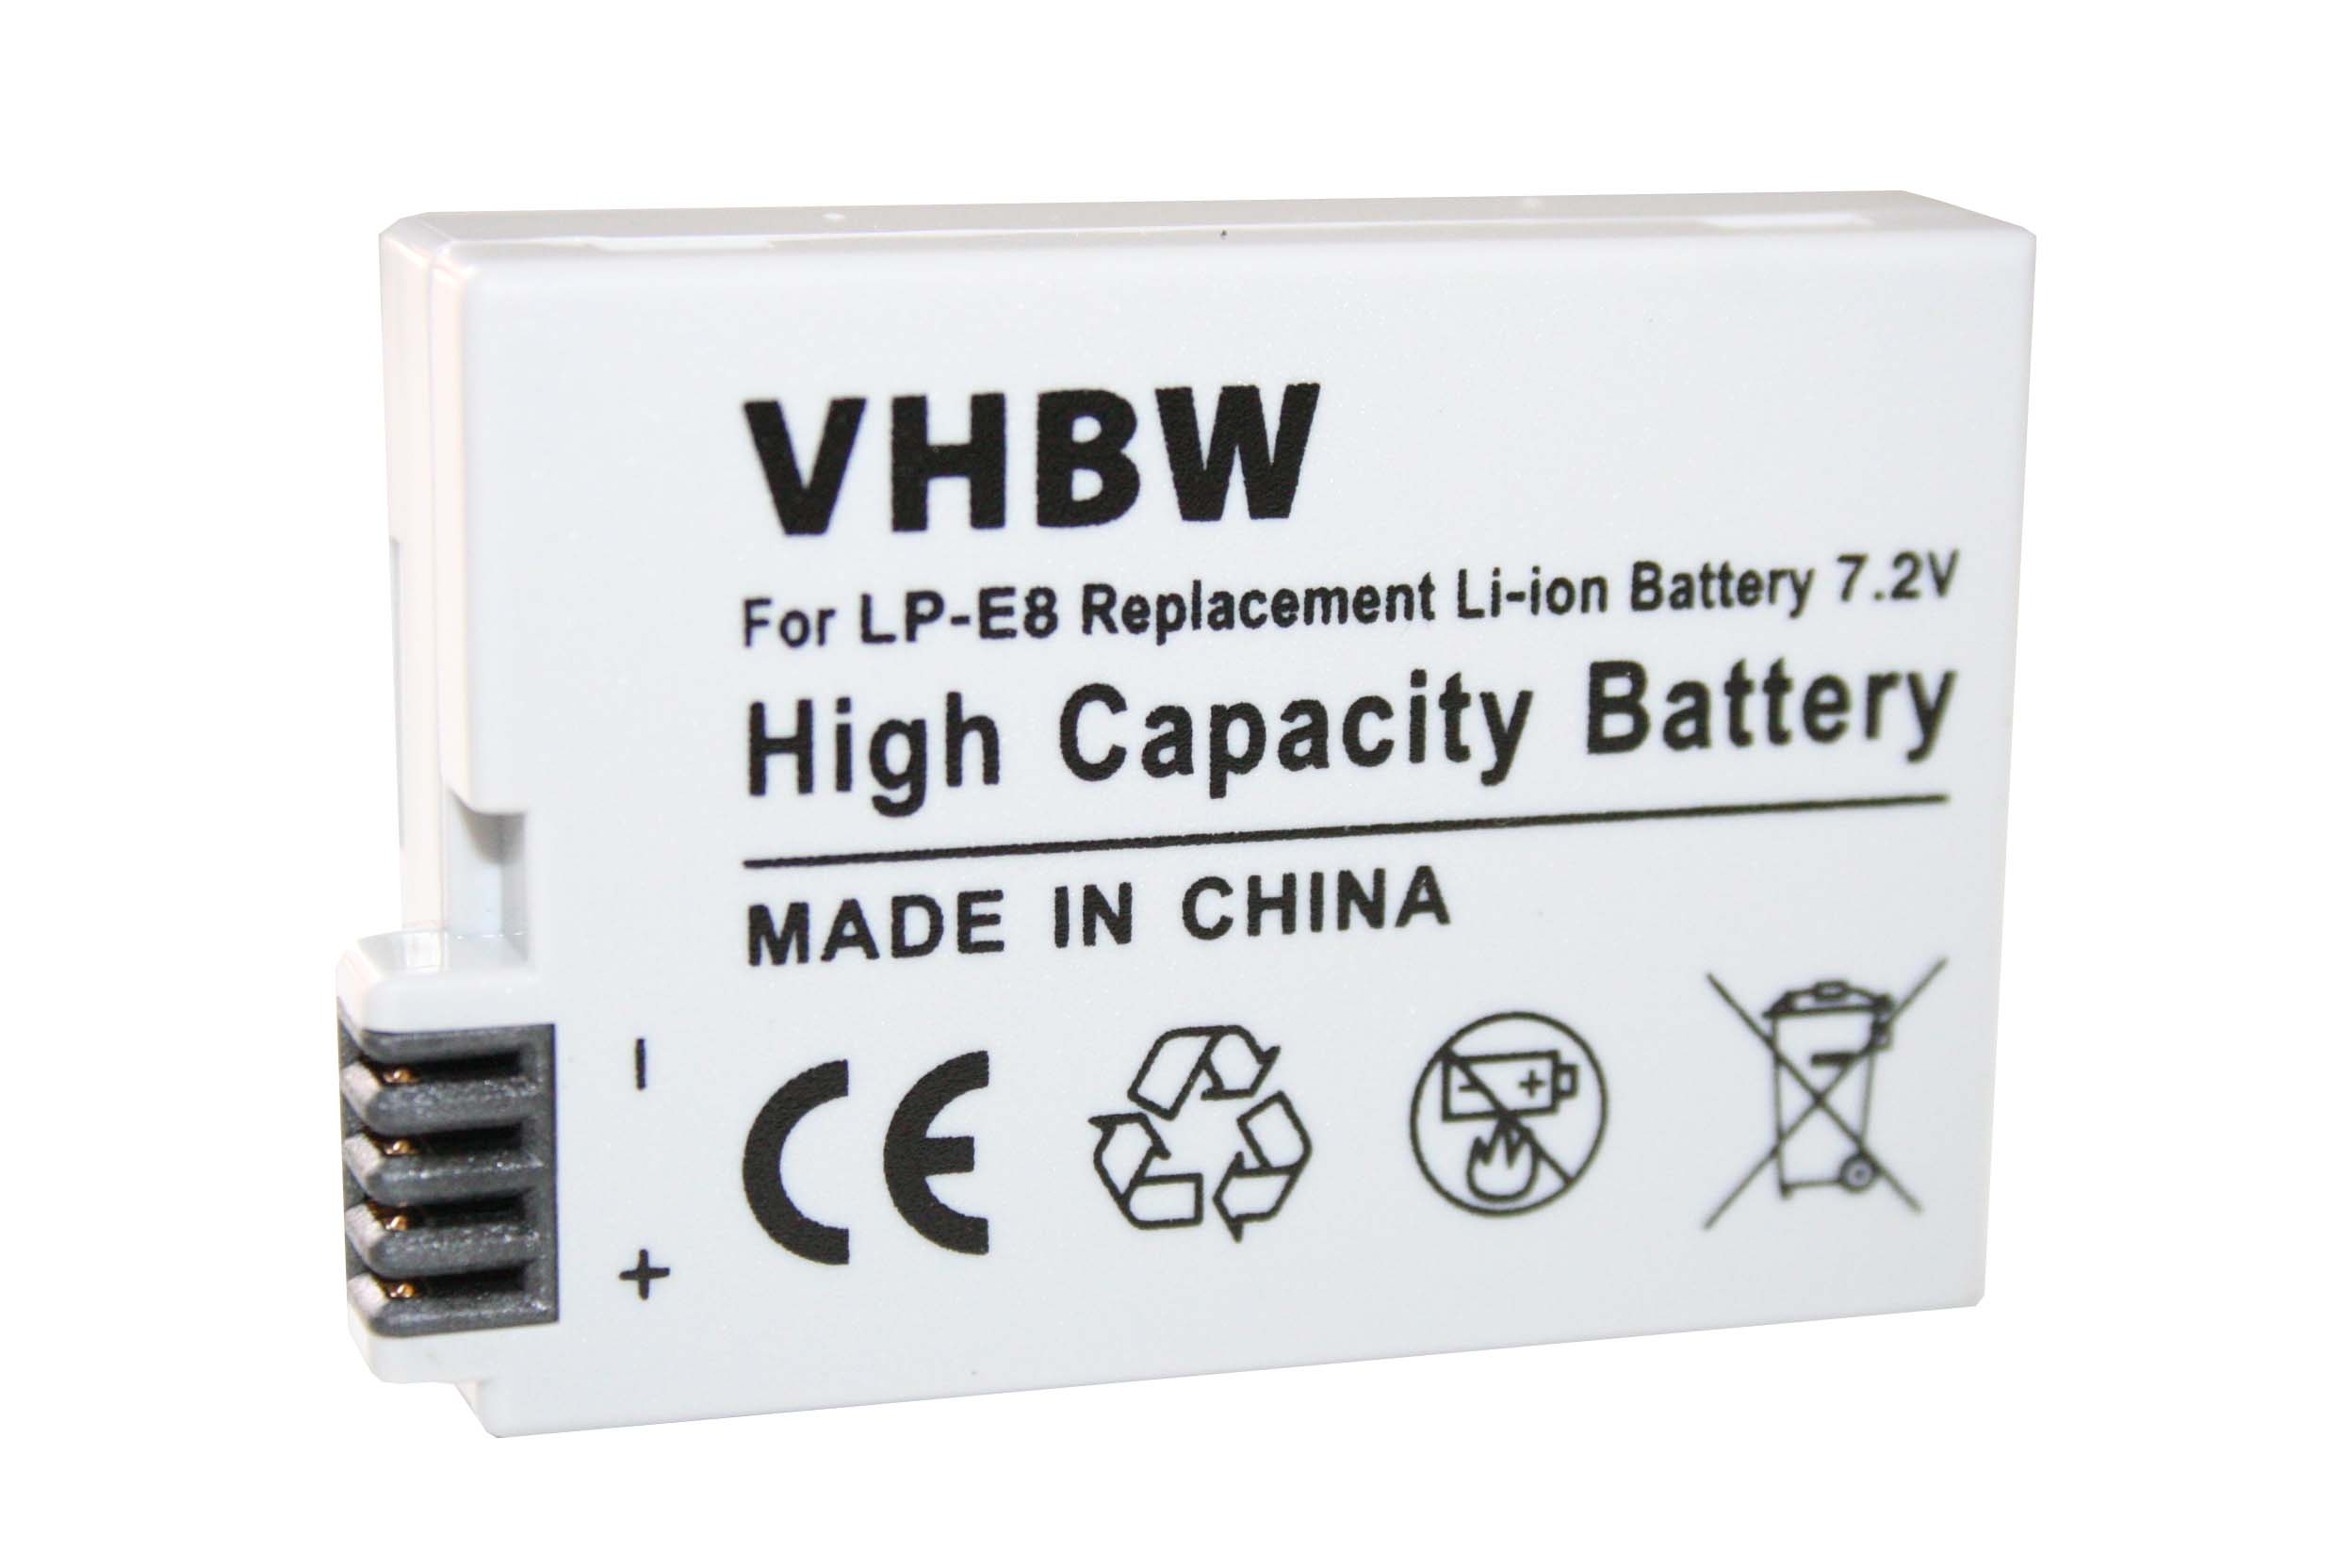 VHBW Ersatz für Kamera, Volt, 900 - Akku 7.2 Li-Ion LP-E8 Canon für